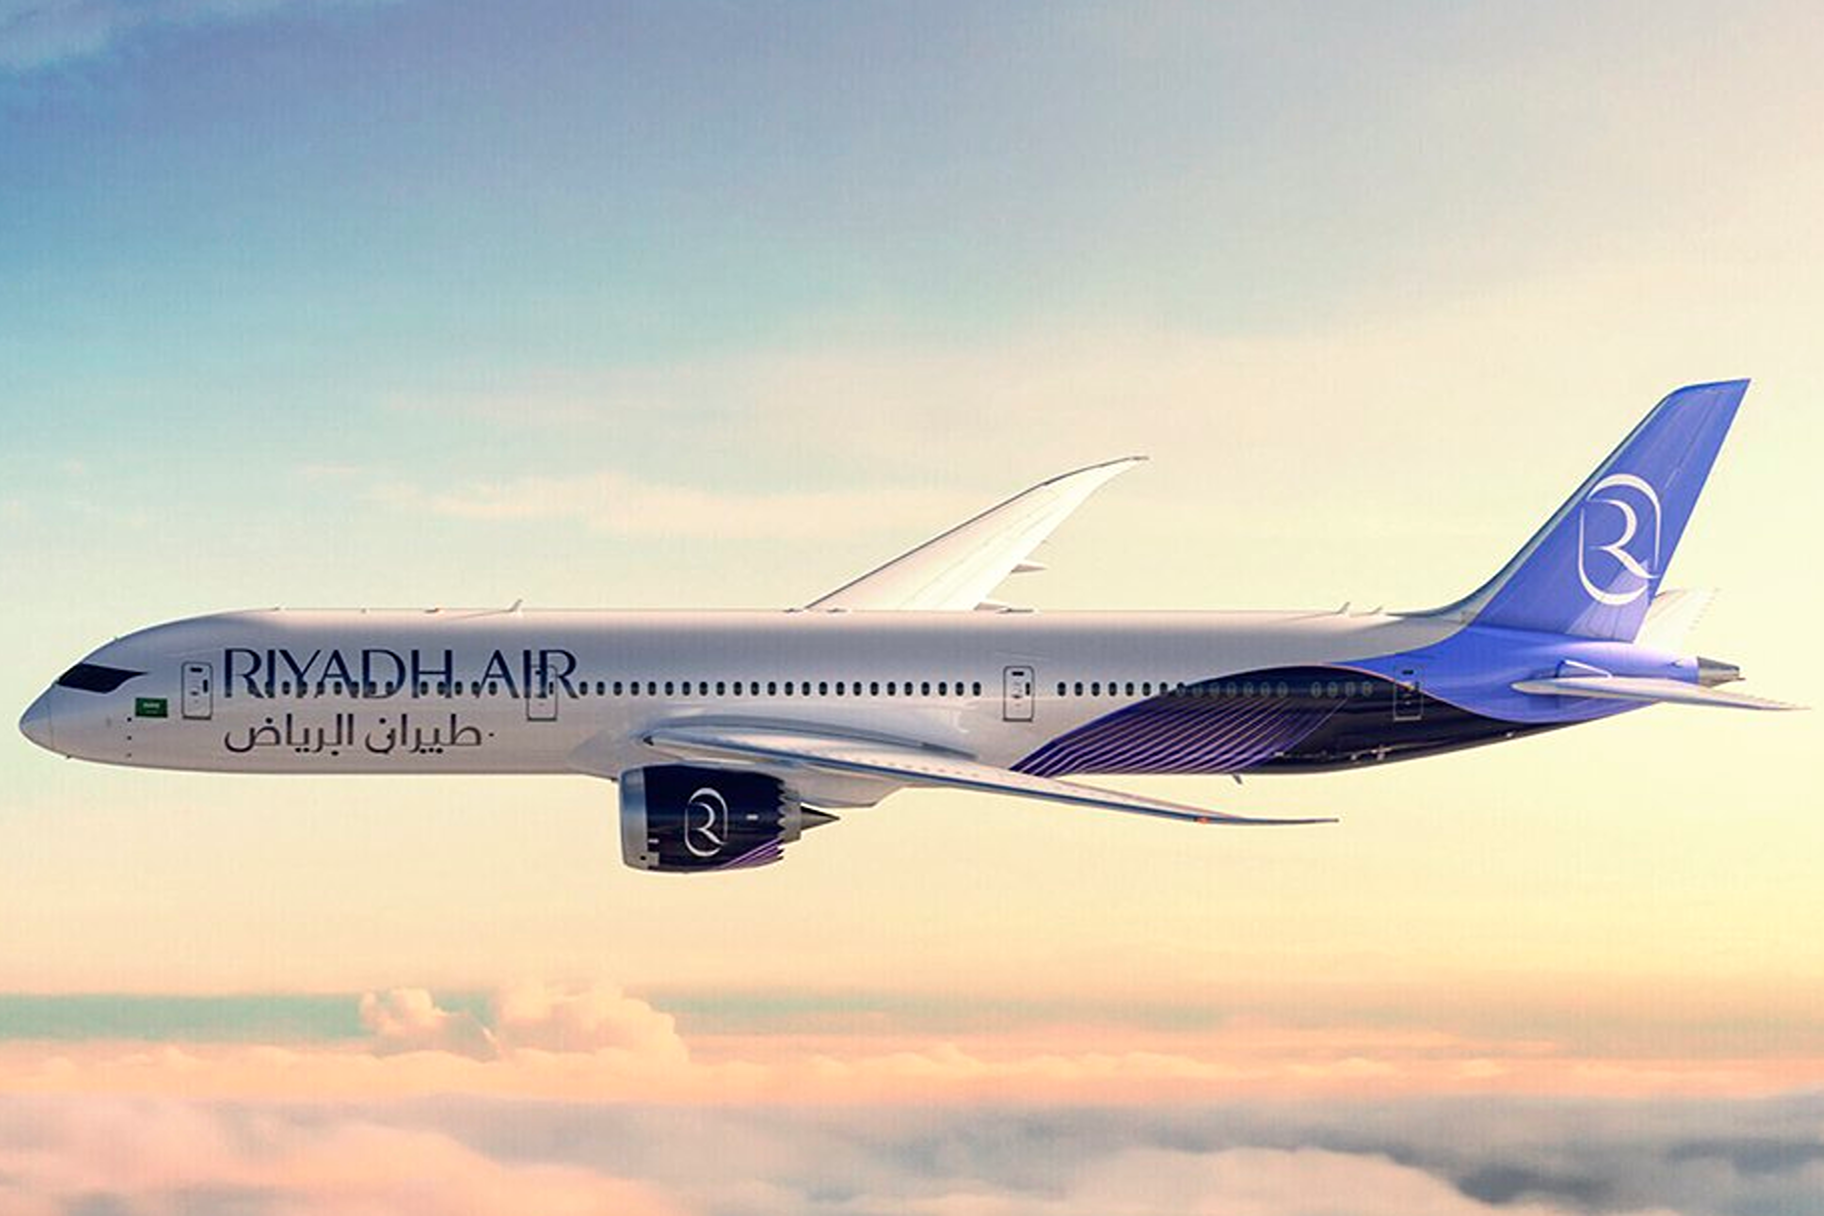 Riyadh Air white livery